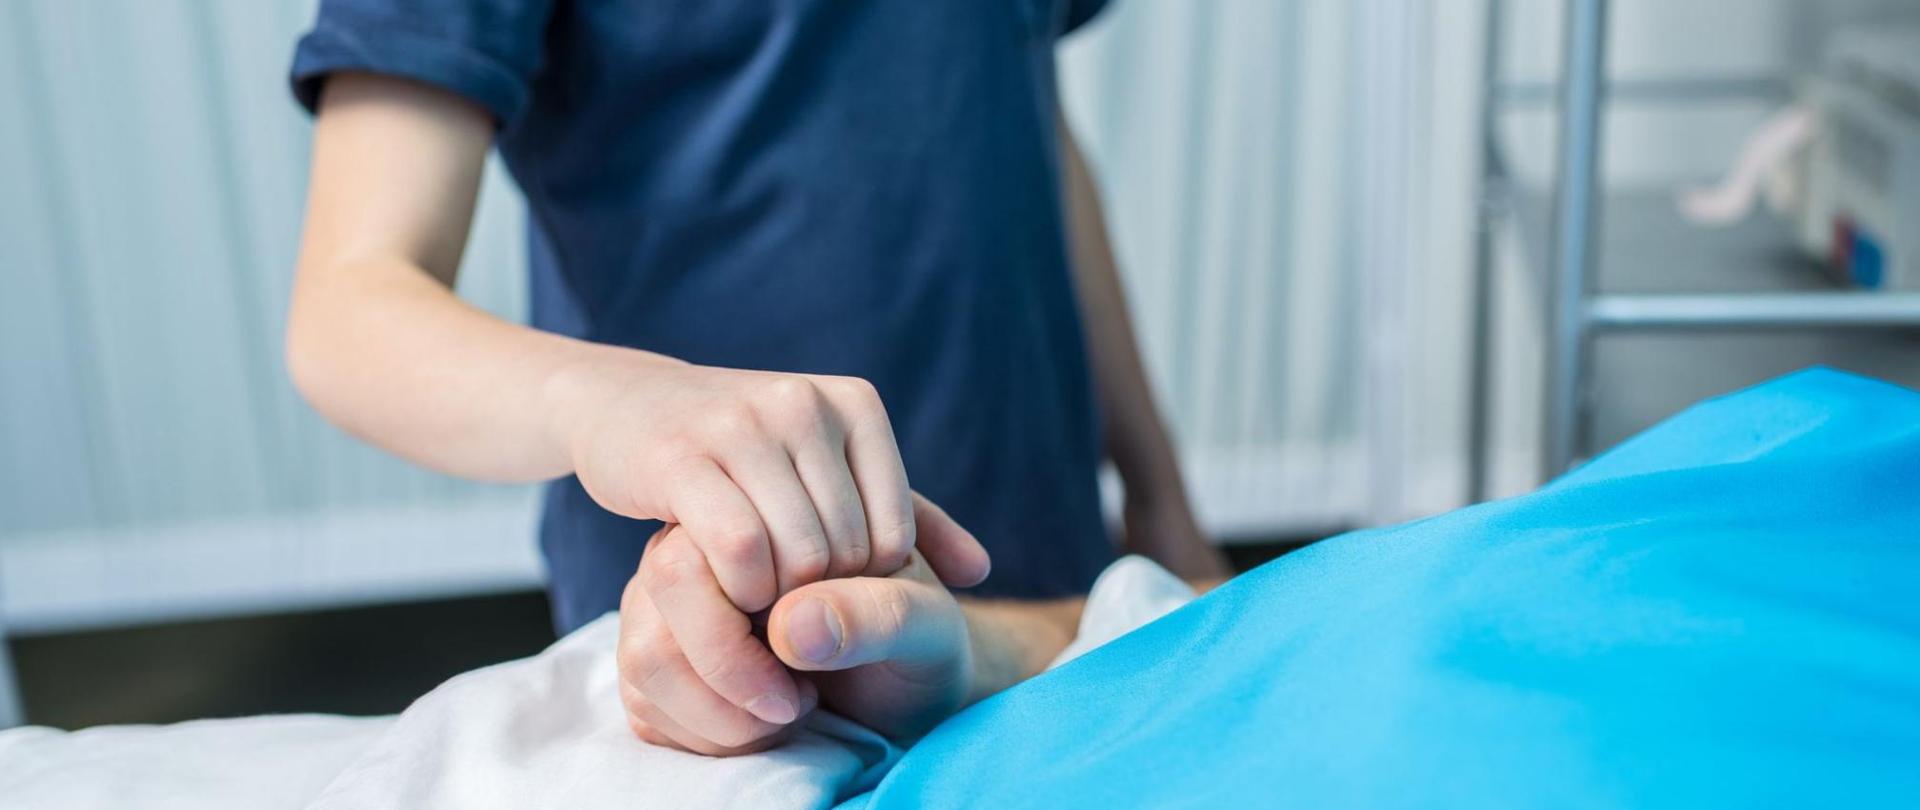 Na zdjęciu jest leżący na łóżku pacjent oraz stojący nad nim lekarz trzymający go za rękę.